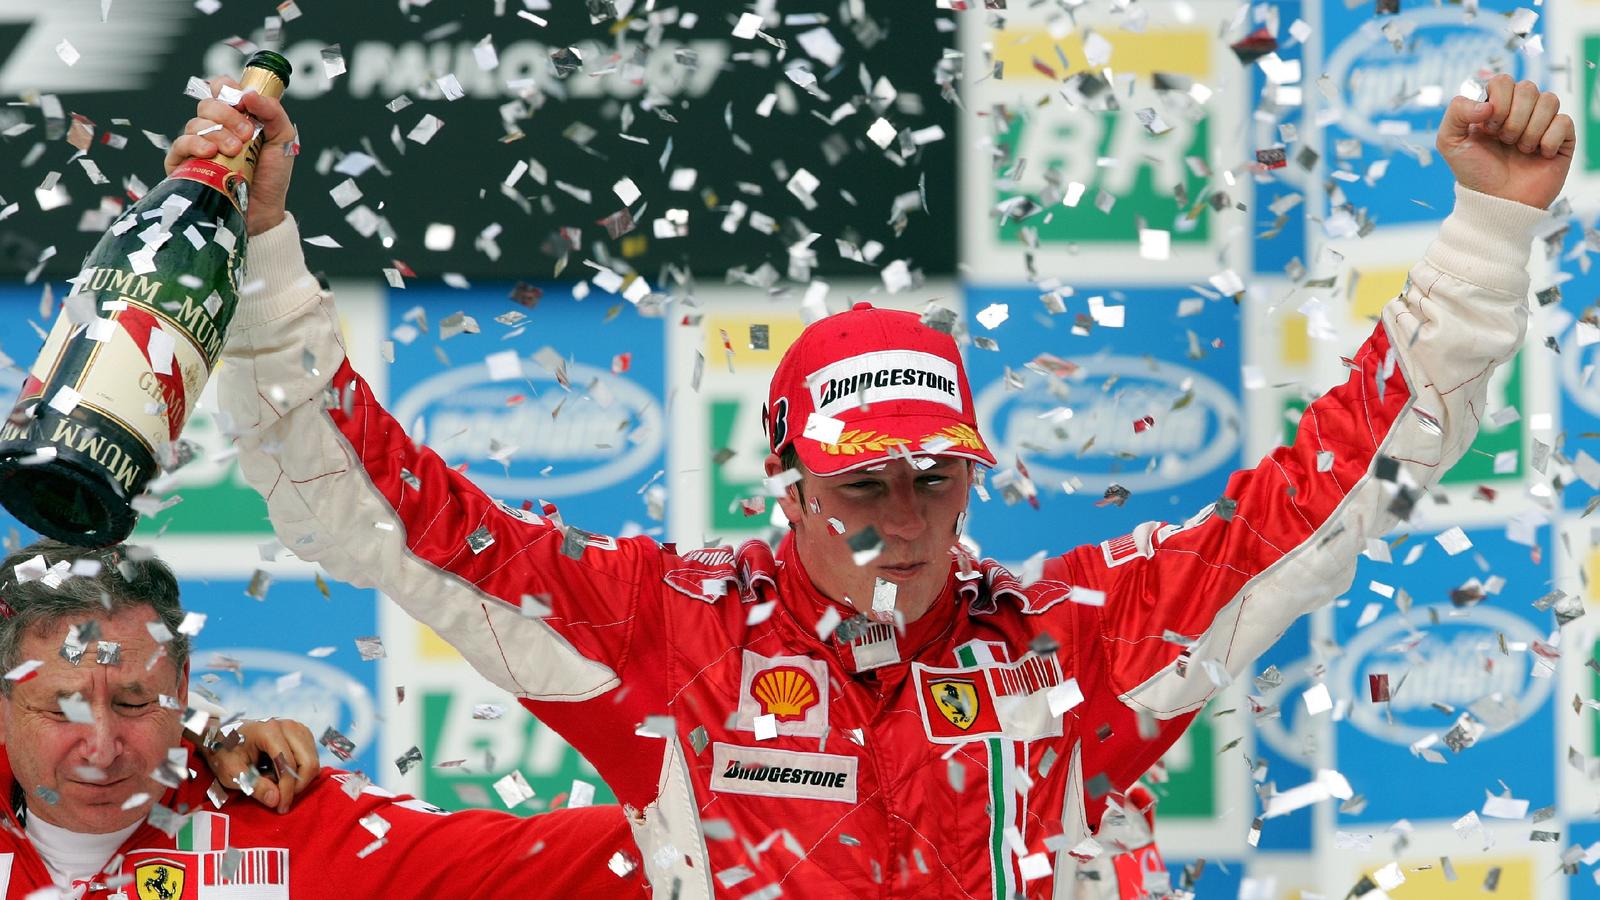 ARCHIV - Der finnische Formel-1-Pilot Kimi Räikkönen vom Team Ferrari bejubelt seinen Sieg beim Großen Preis von Brasilien und den WM-Titel der Saison 2007 in Sao Paulo, Brasilien. Links im Bild Ferrari-Teamchef Jean Todt (Archivfoto vom 21.10.2007).